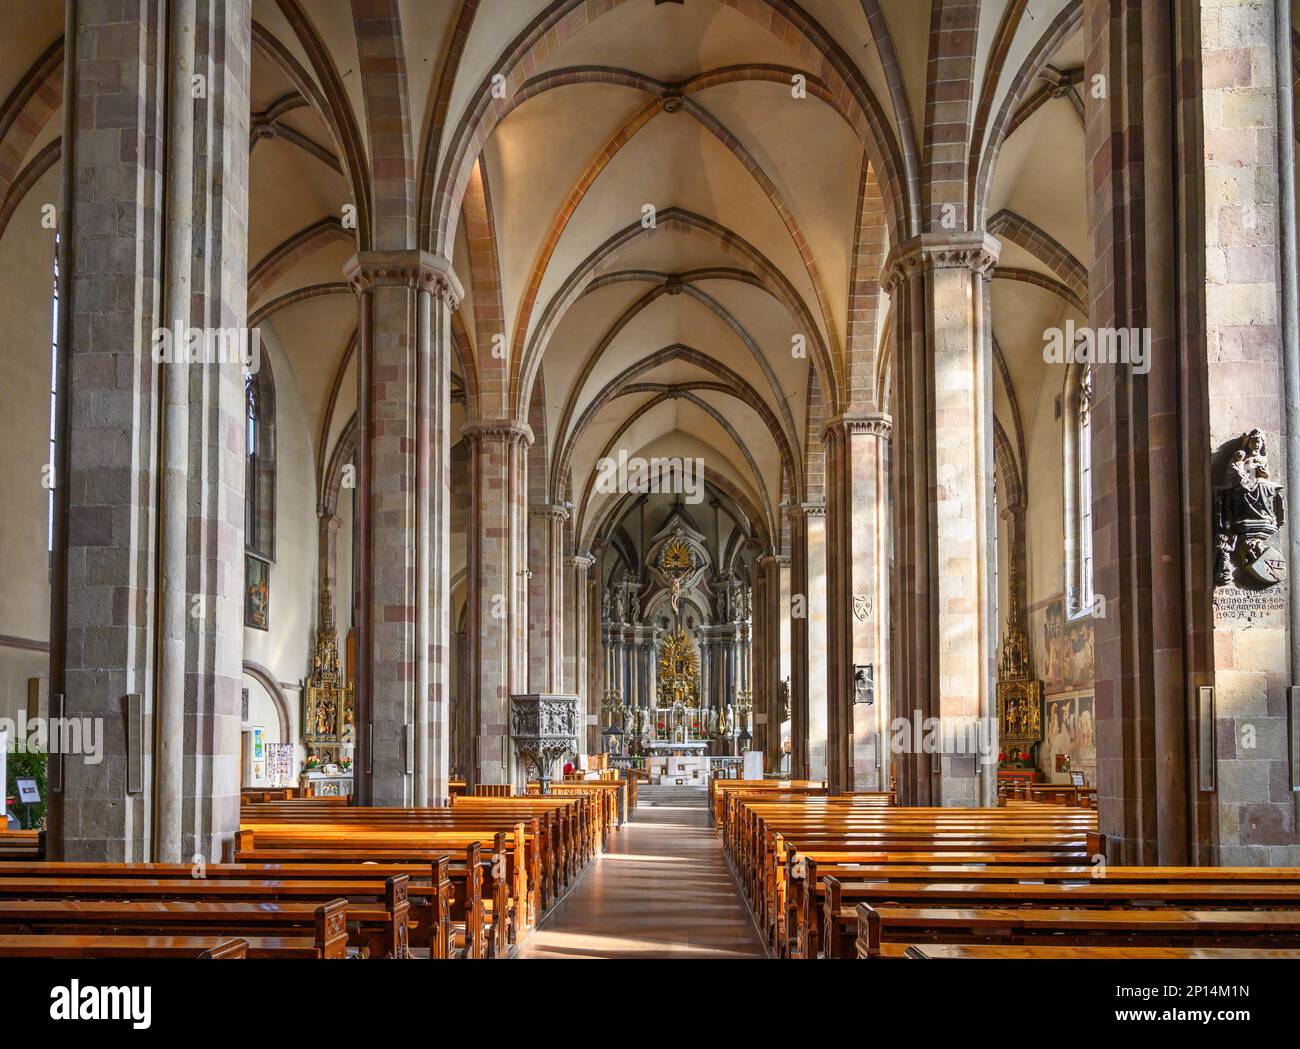 Interior of Bolzano Cathedral (Duomo di Bolzano), (Bozen) Bolzano, Italy Stock Photo